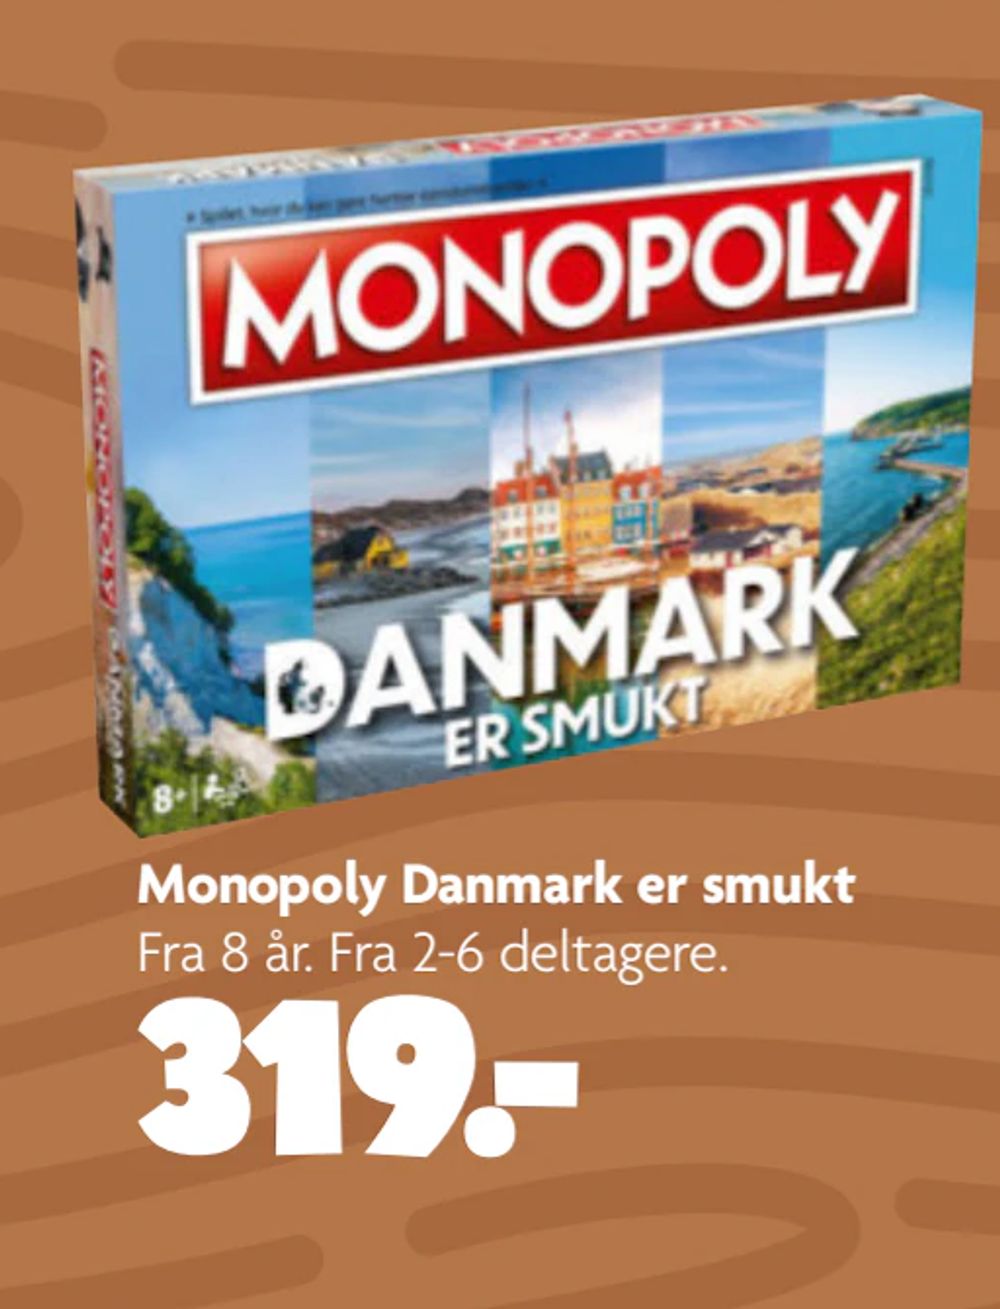 Tilbud på Monopoly Danmark er smukt fra BR til 319 kr.